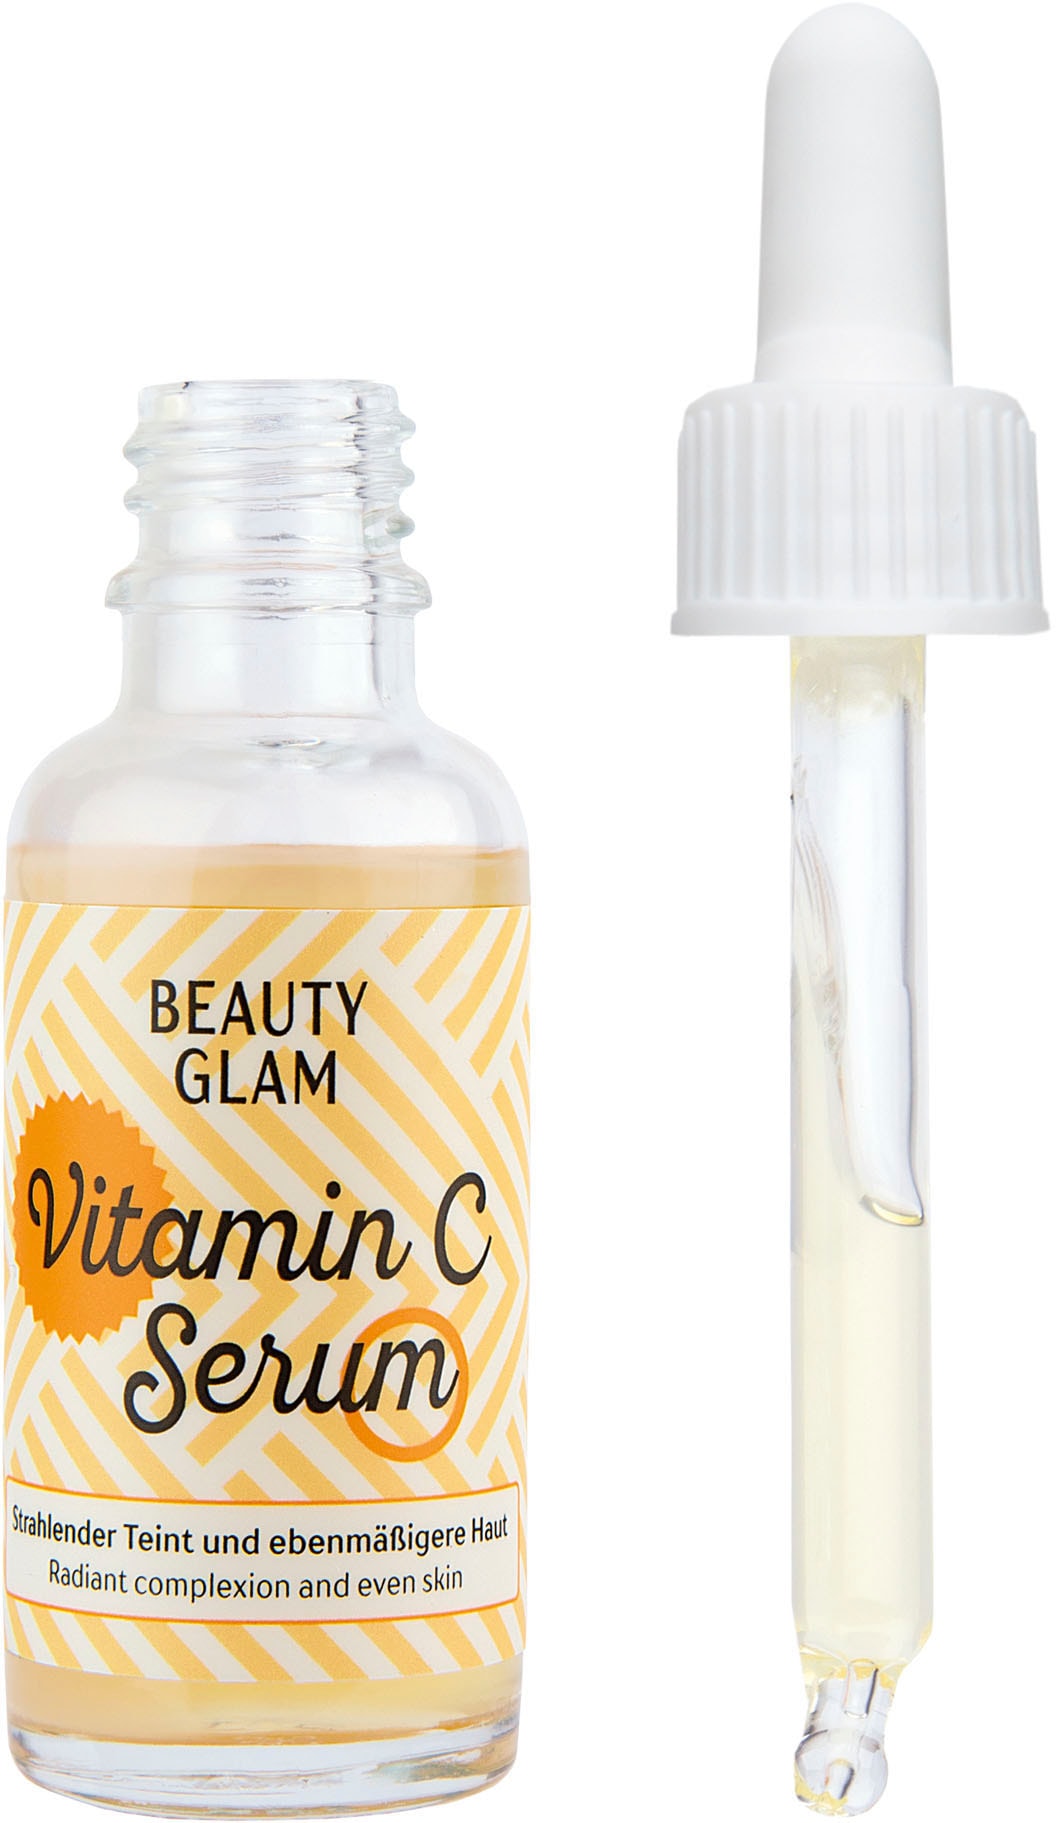 OTTOversand BEAUTY »Beauty GLAM Serum« Glam bei C Gesichtsserum Vitamin